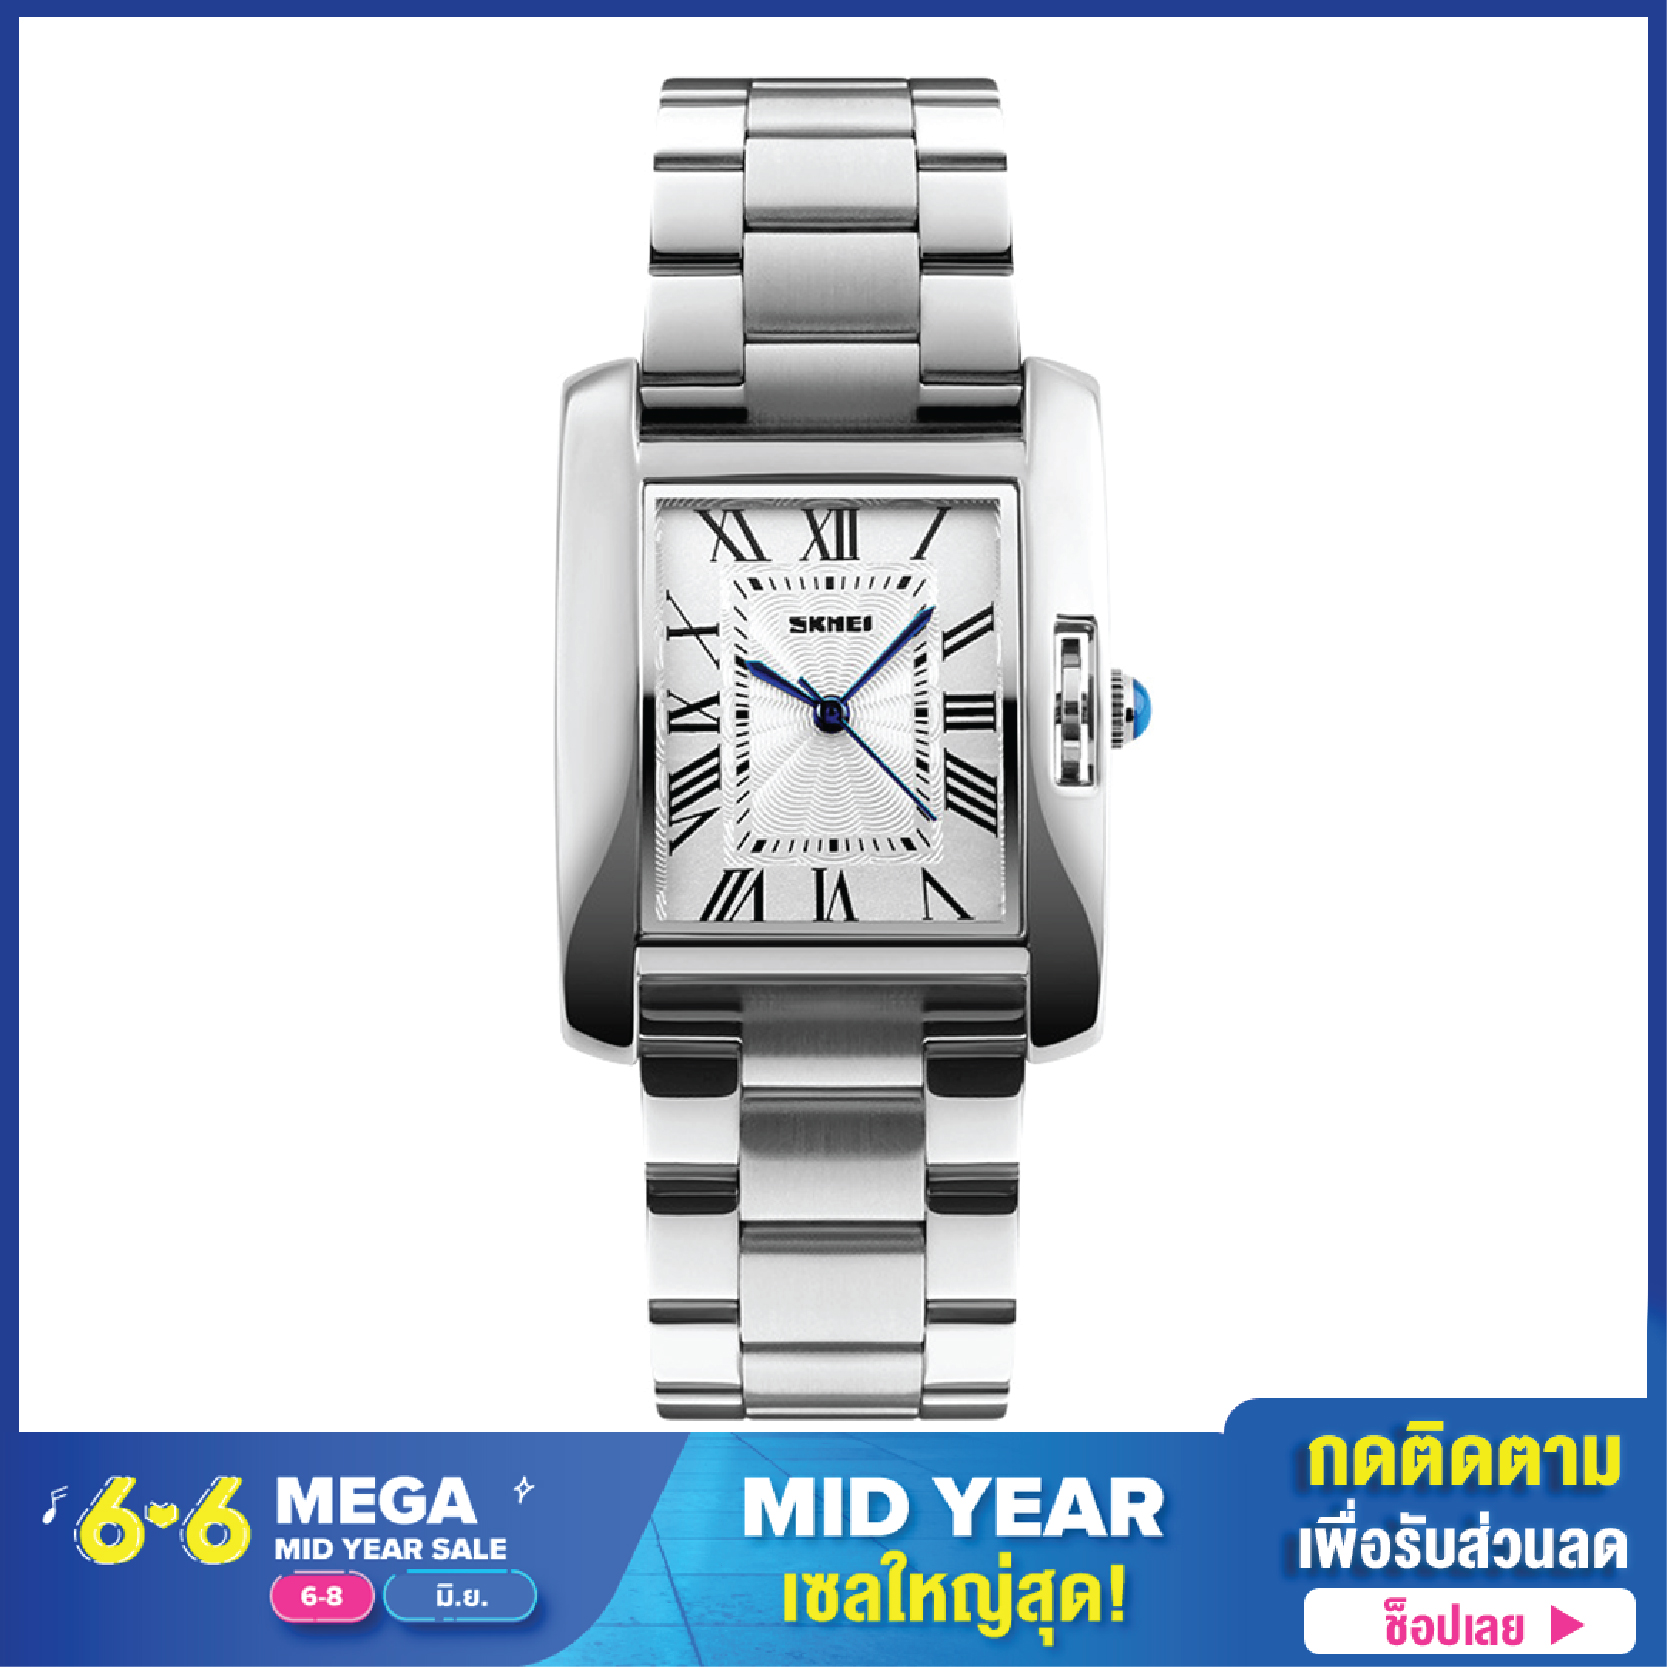 พร้อมส่ง SKMEI1284 ของแท้100% นาฬิกาข้อมือ สายแสตนเลสสีเงิน หน้าปัดเลขโรมัน ดีไซน์หรู เหมาะกับเป็นนาฬิกาข้อมือผู้หญิง ปี2020 ใหม่ล่าสุด แบรนด์แท้ (เอสเคมี่) นาฬิกากันน้ำ Twenty Four